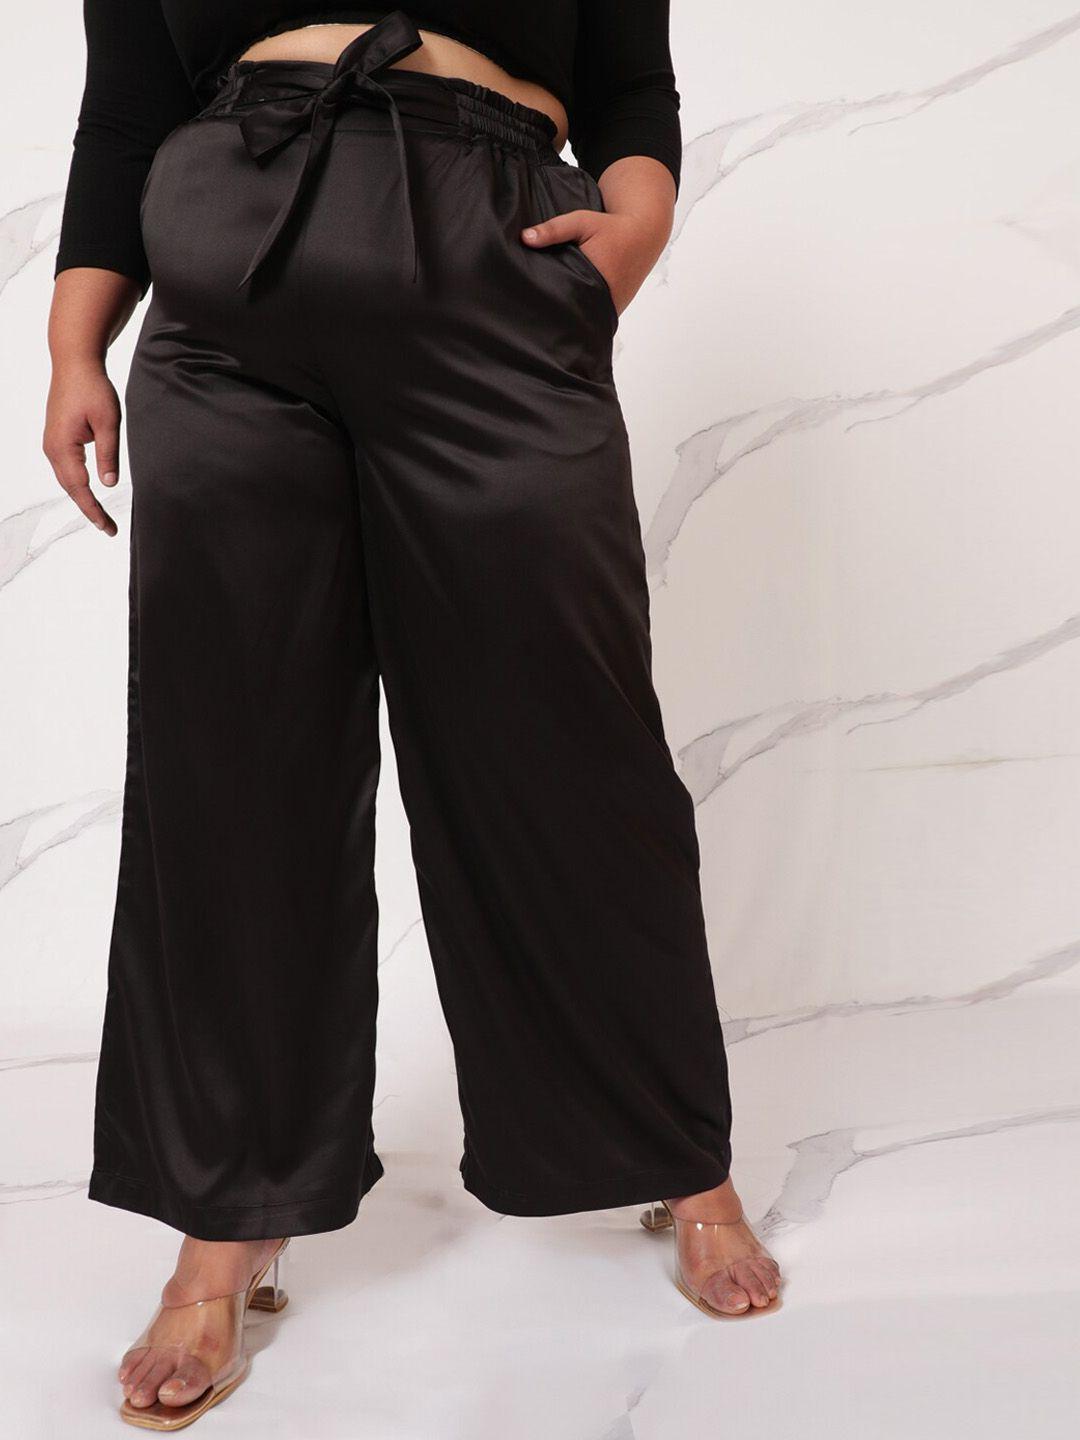 amydus women plus size black high rise parallel trouser